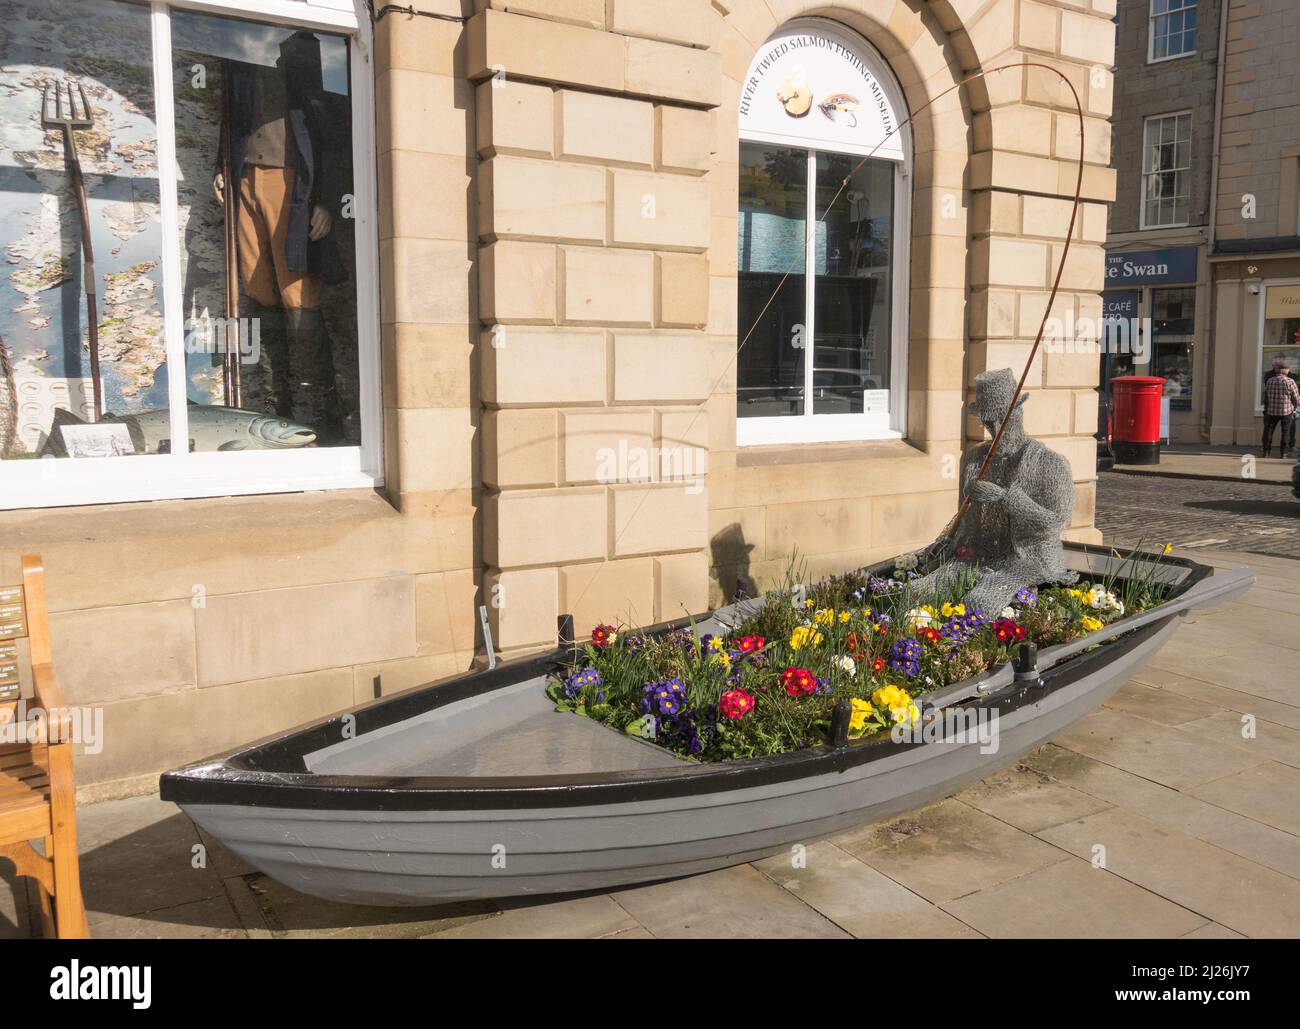 Sculpture d'une personne pêchant dans un bateau à rames à l'extérieur du River Tweed Museum of Salmon Fishing à l'hôtel de ville de Kelso, aux frontières écossaises, en Écosse. Banque D'Images